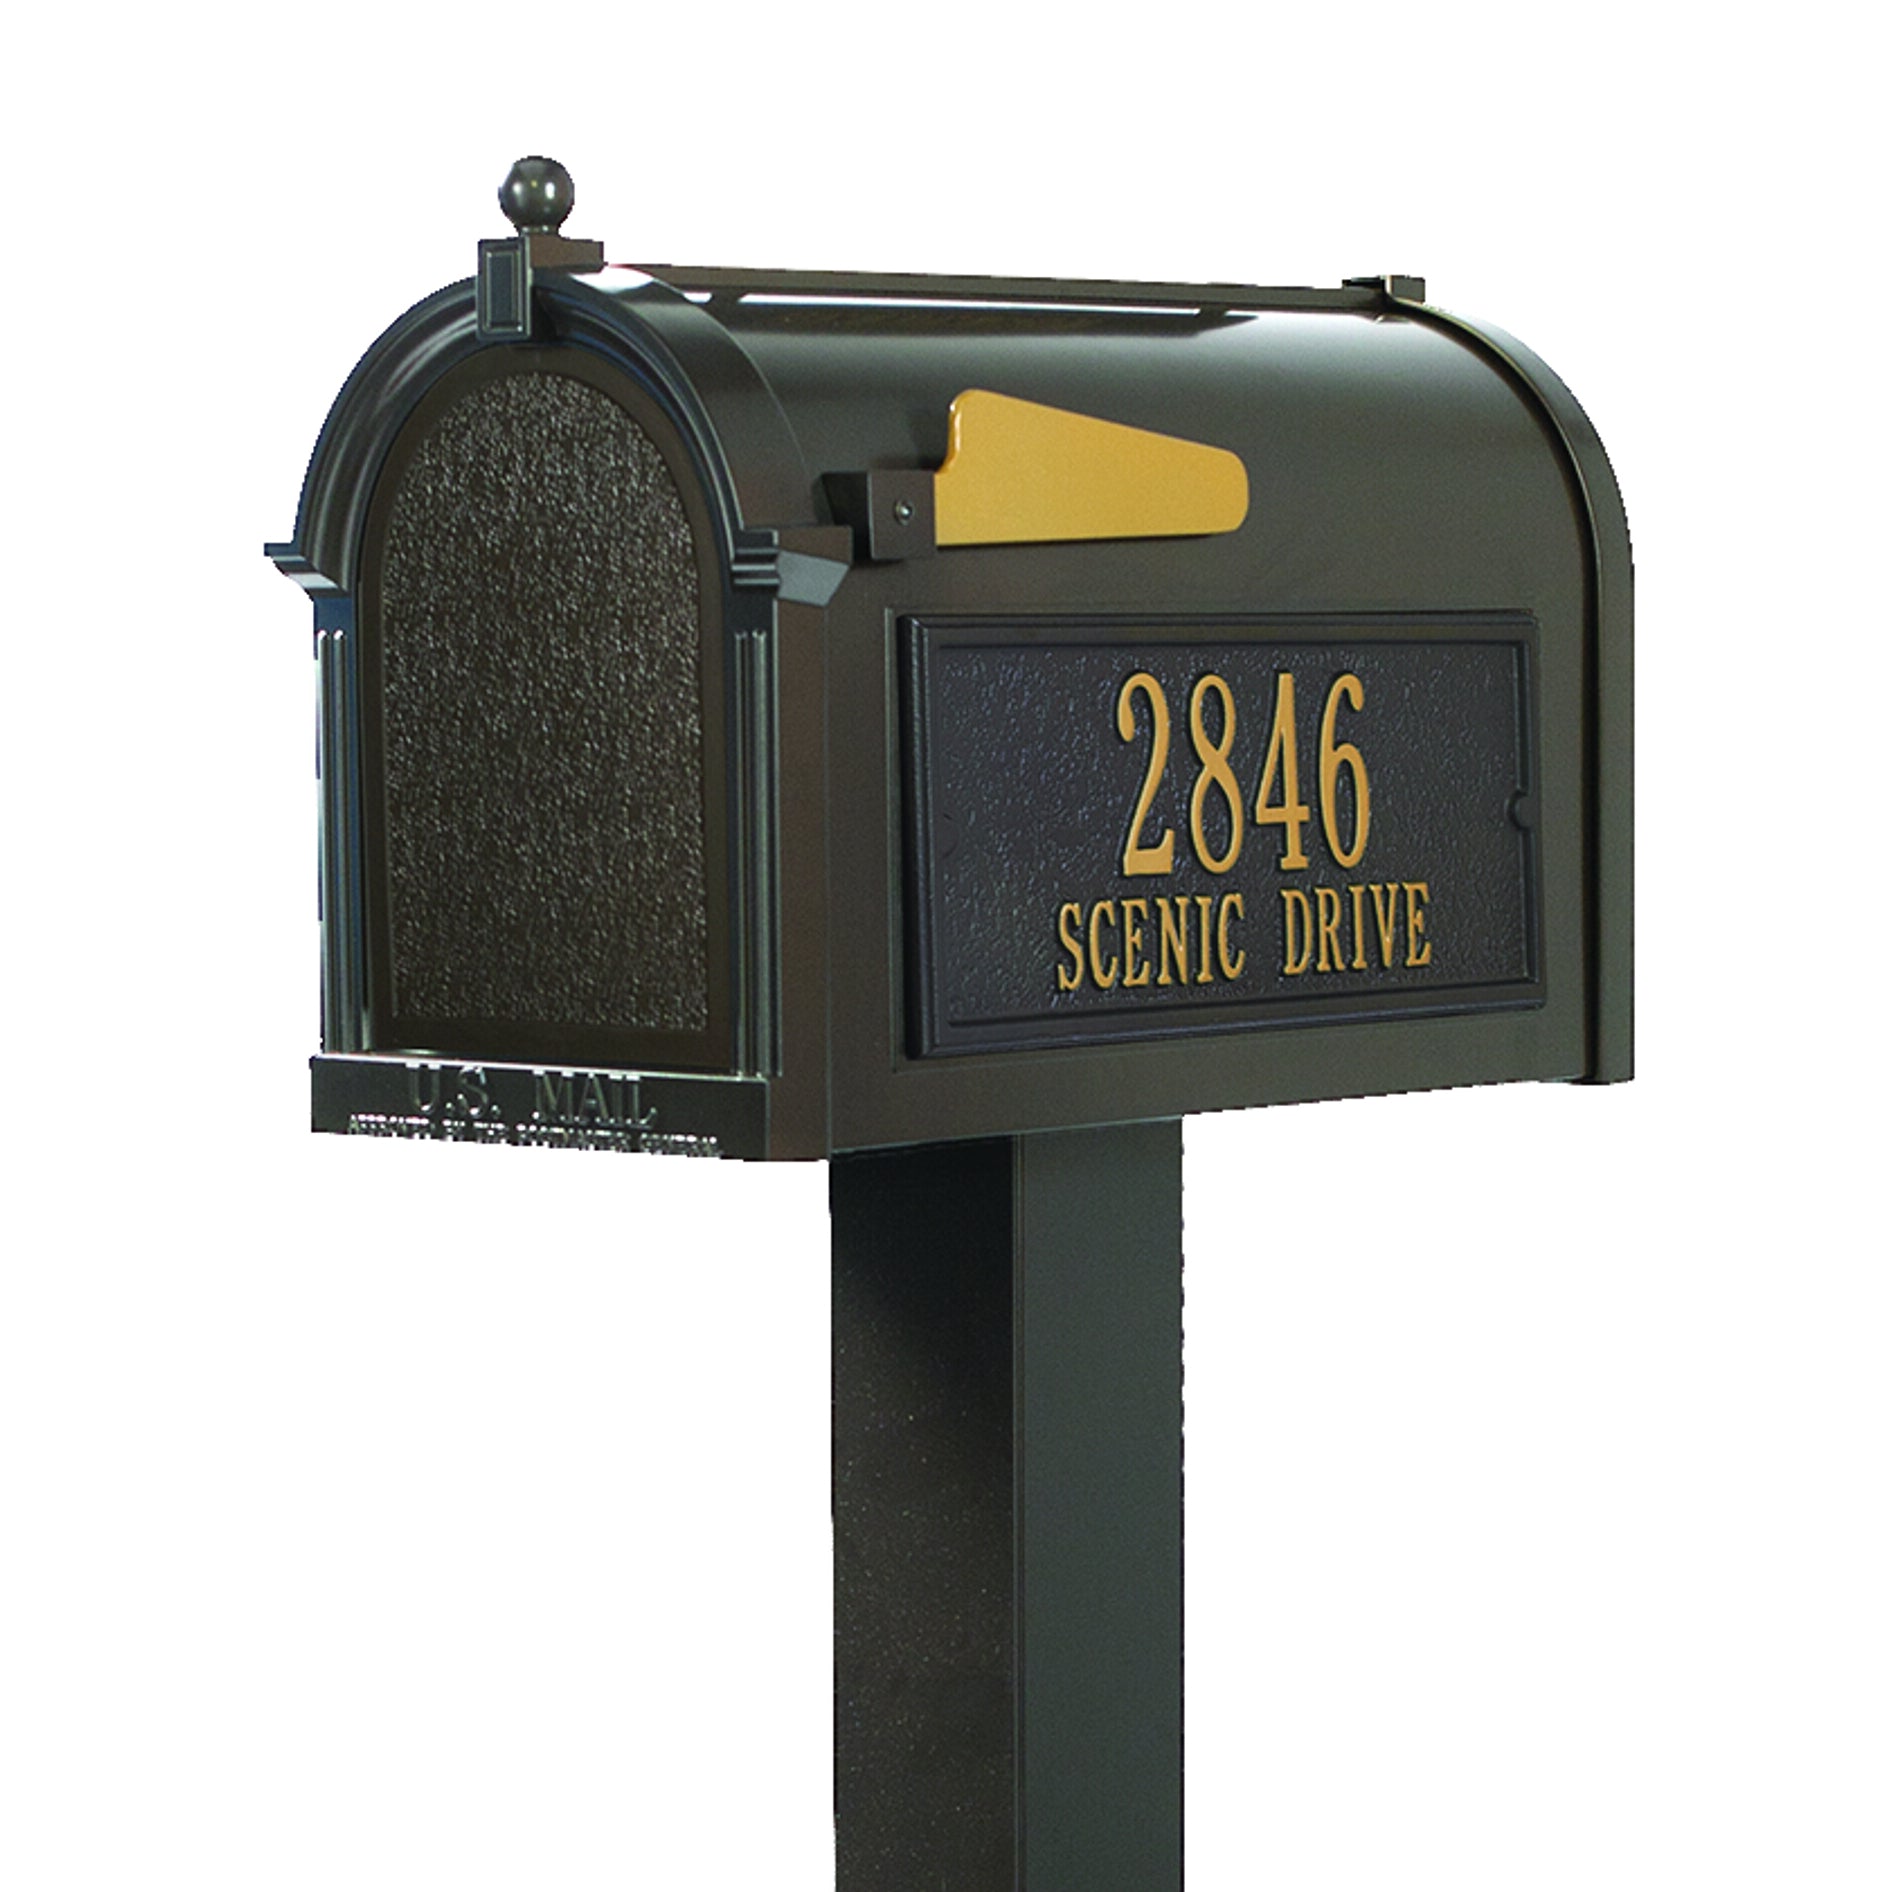 ≪再値下げ≫ Personalized セール Personalized Wall with Whitehall Mailbox Balmoral  Whitehall Mailbox クリアランス with Side Address Plaques， Monogram  Post Package  (3 Colors Available) 並行輸入品